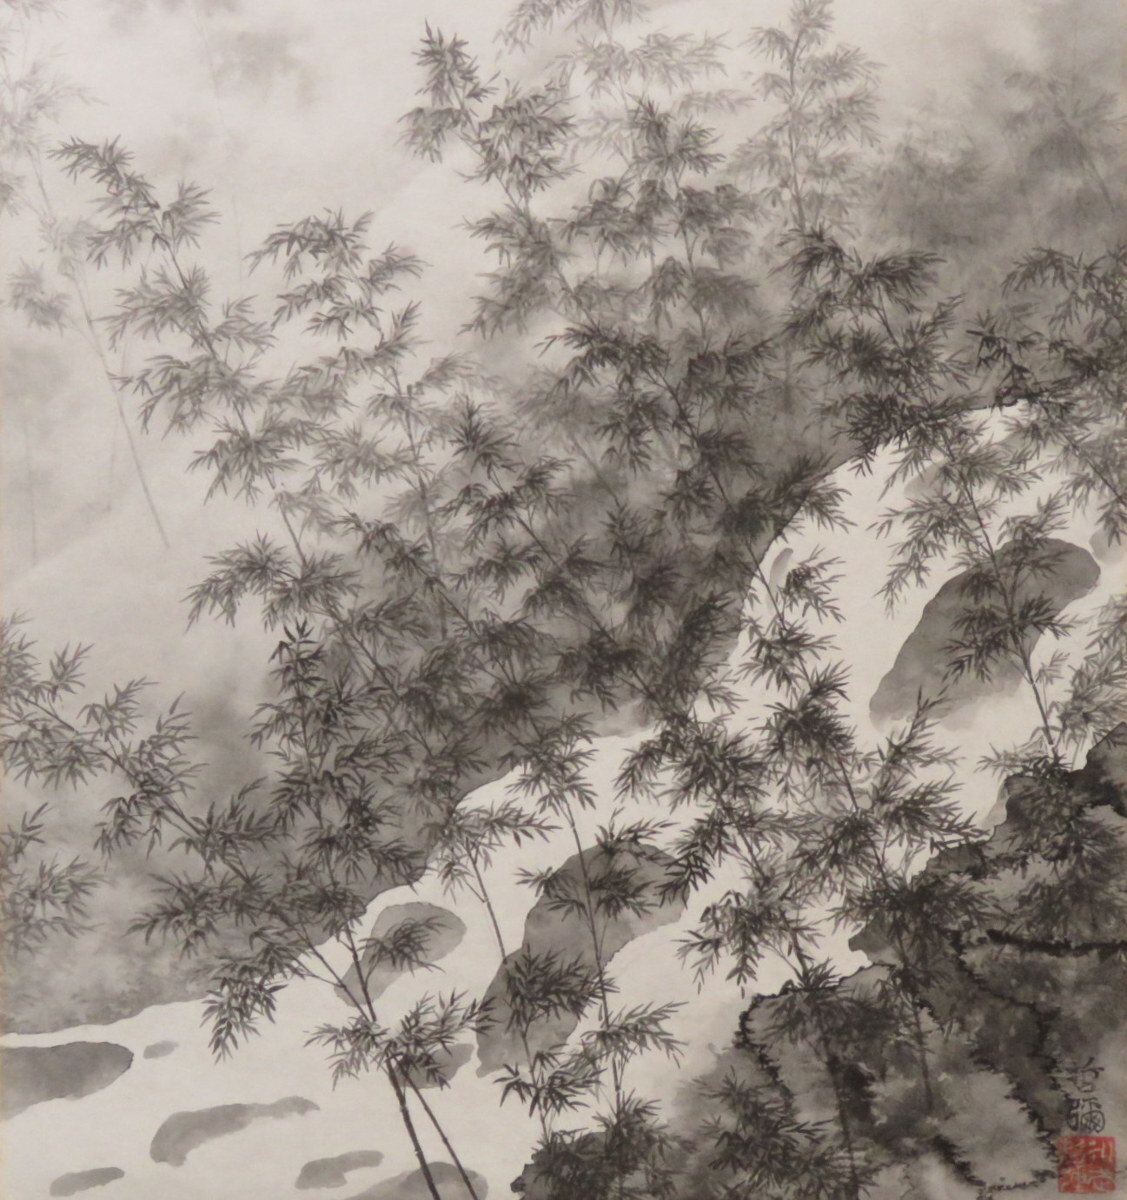 JY1275◆◇Pergamino colgante Tetsuya Eitake Bosque de bambú Linterna Shaku Gogyo Nueva obra del artista contemporáneo◇◆Colgado todo el año, colgando todos los días, amuleto de la suerte, pintura japonesa, cuadro, pintura japonesa, paisaje, Fugetsu